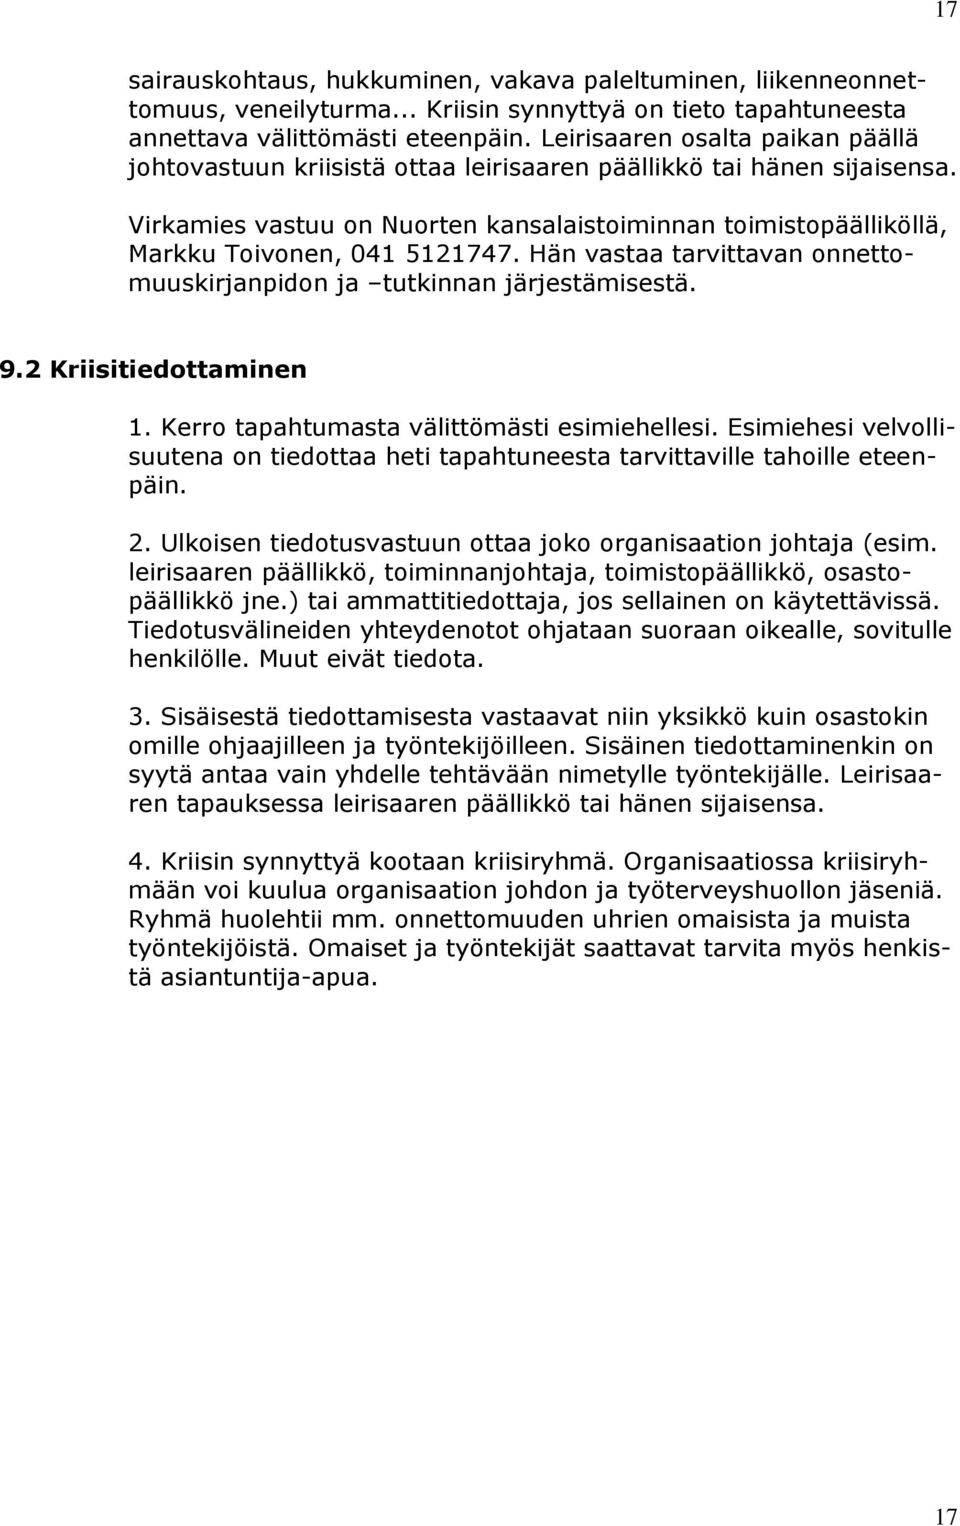 Virkamies vastuu on Nuorten kansalaistoiminnan toimistopäälliköllä, Markku Toivonen, 041 5121747. Hän vastaa tarvittavan onnettomuuskirjanpidon ja tutkinnan järjestämisestä. 9.2 Kriisitiedottaminen 1.